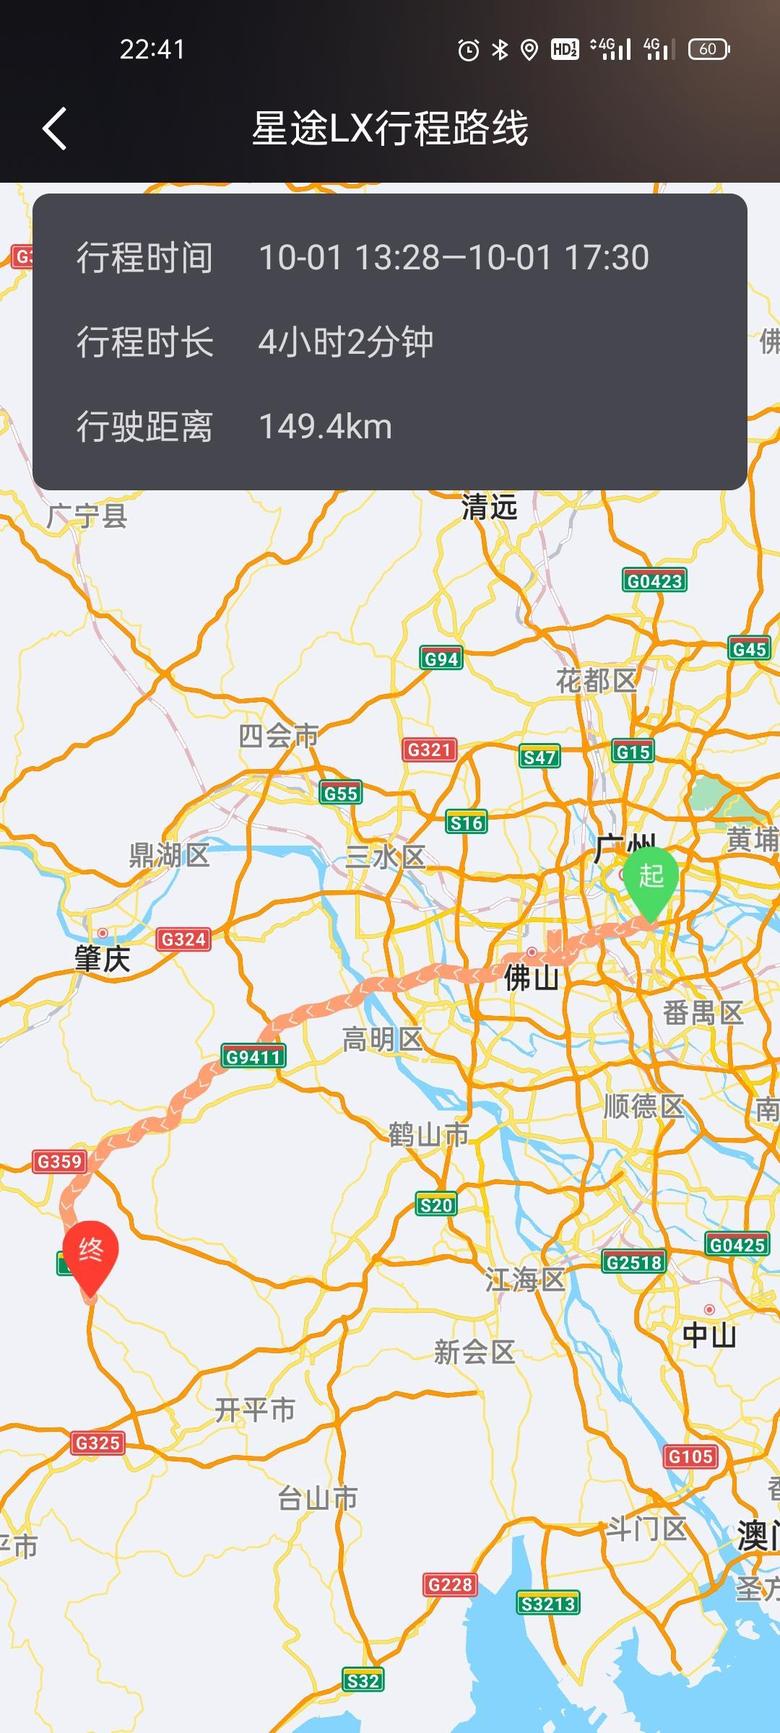 星途追风所在城市:广州车型:星途Lx1.5T第一天路况，开了100多公里+300多公里。前半场100多公里开了4个钟，后面300多公里开了5个钟